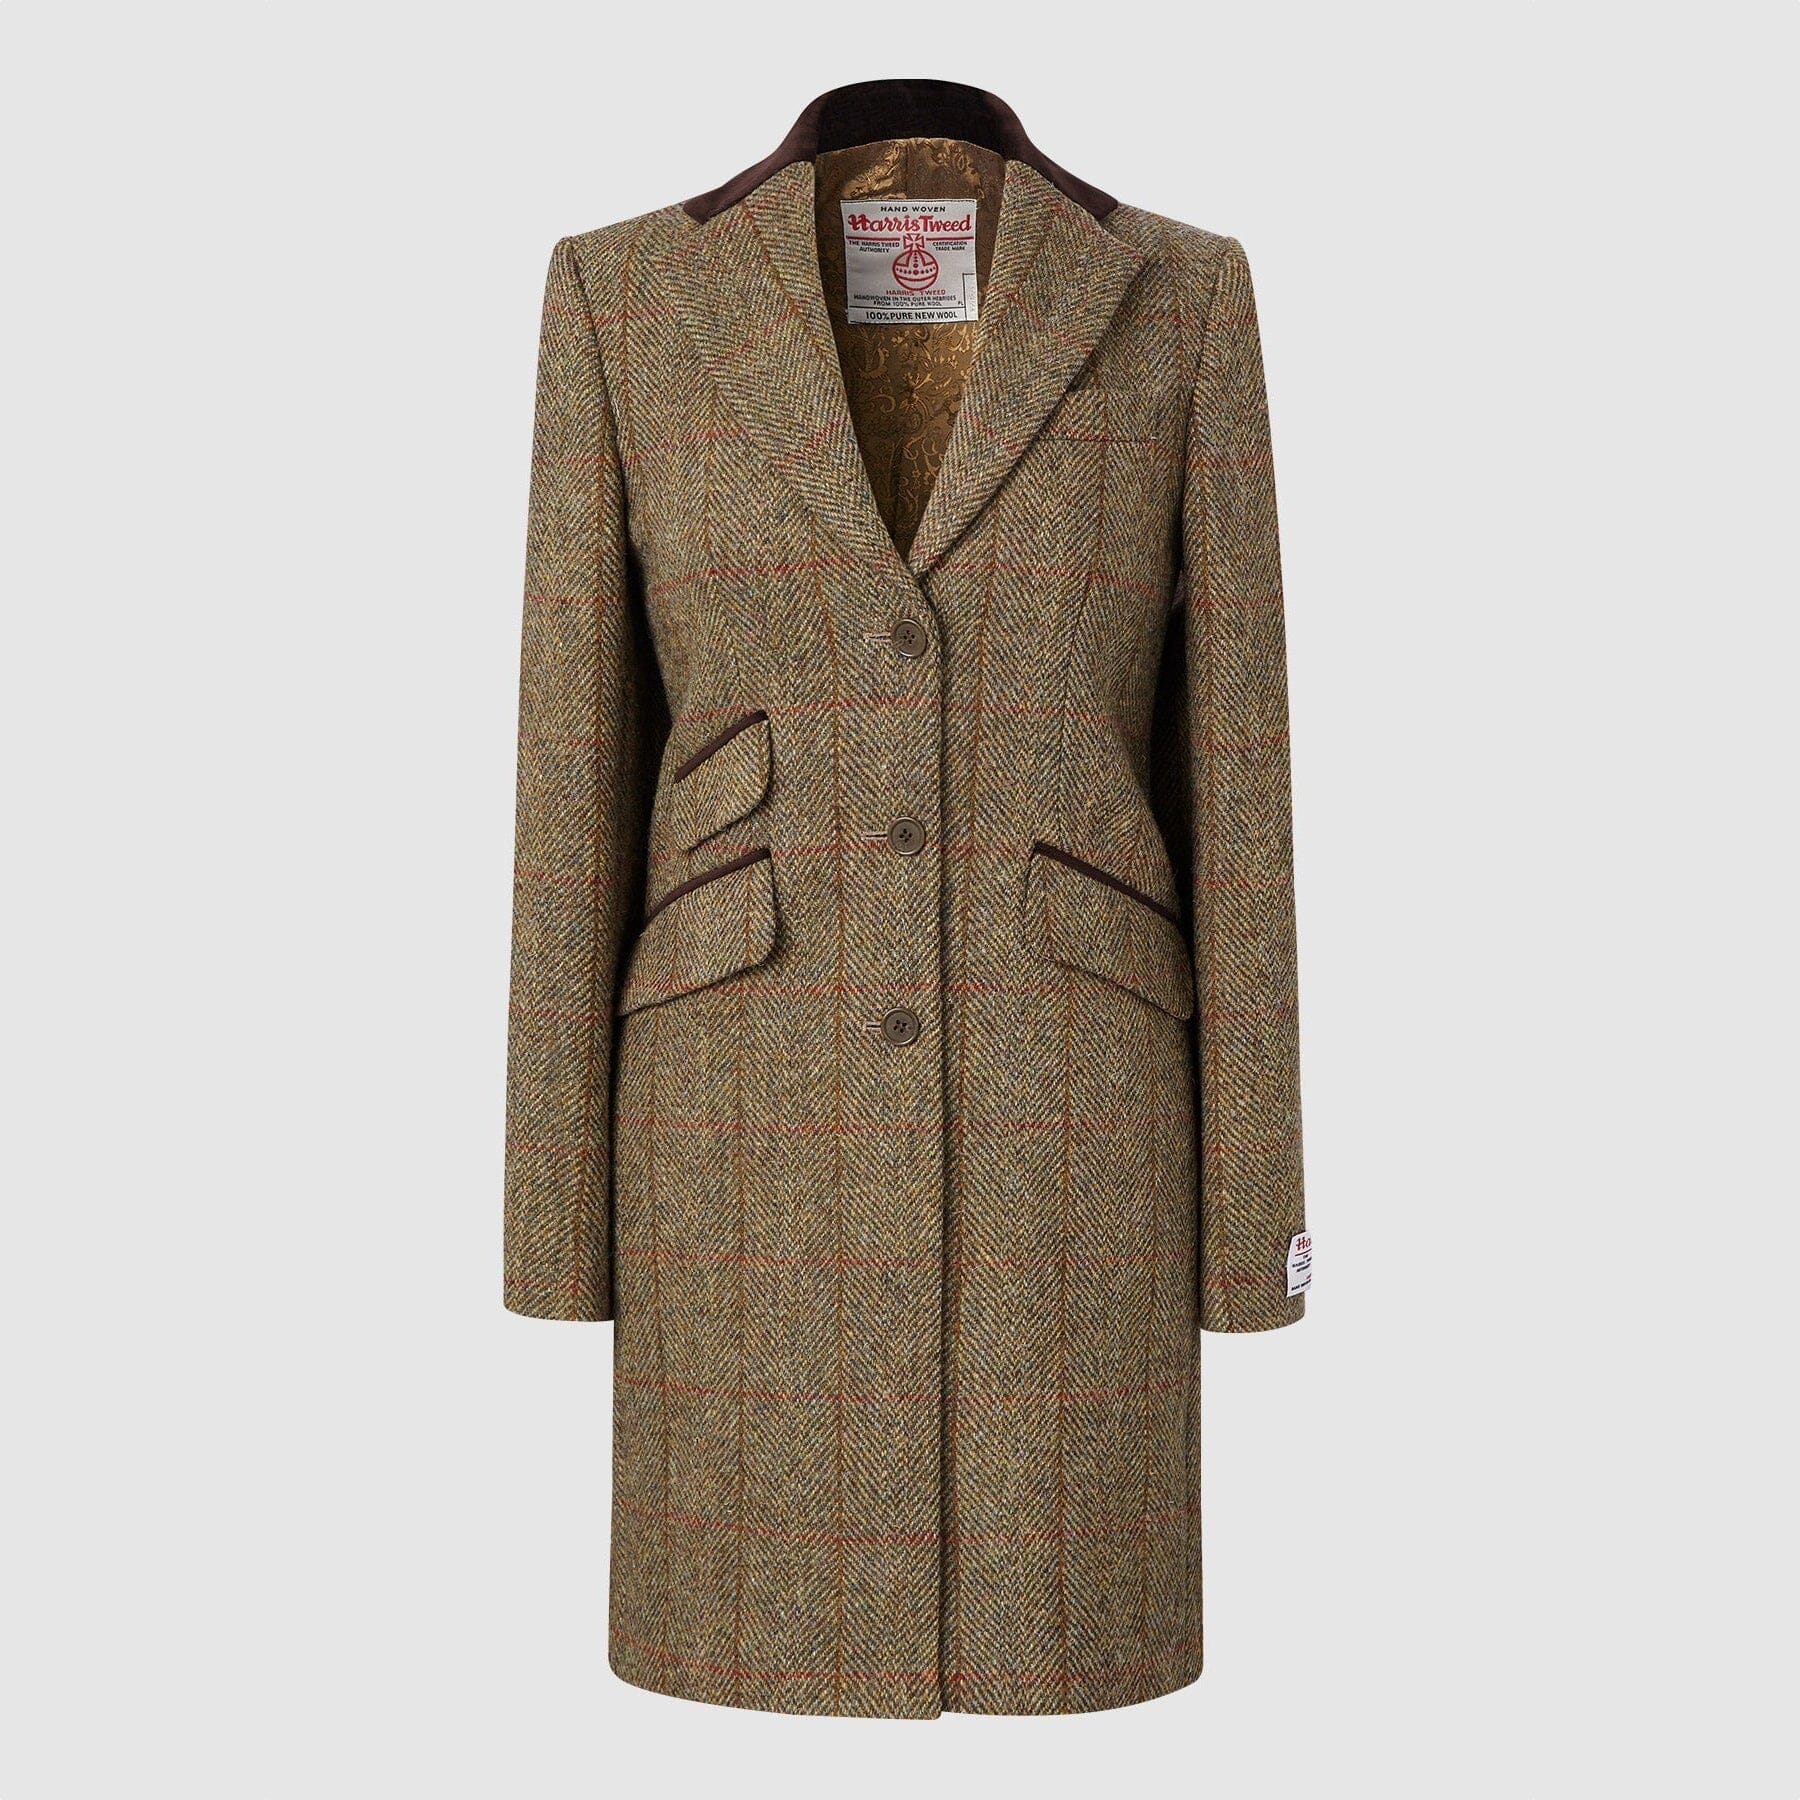 Se Tori 3/4 Ladies Coat frakke af Harris Tweed, mustard - 18 (XXL) hos Godsejeren